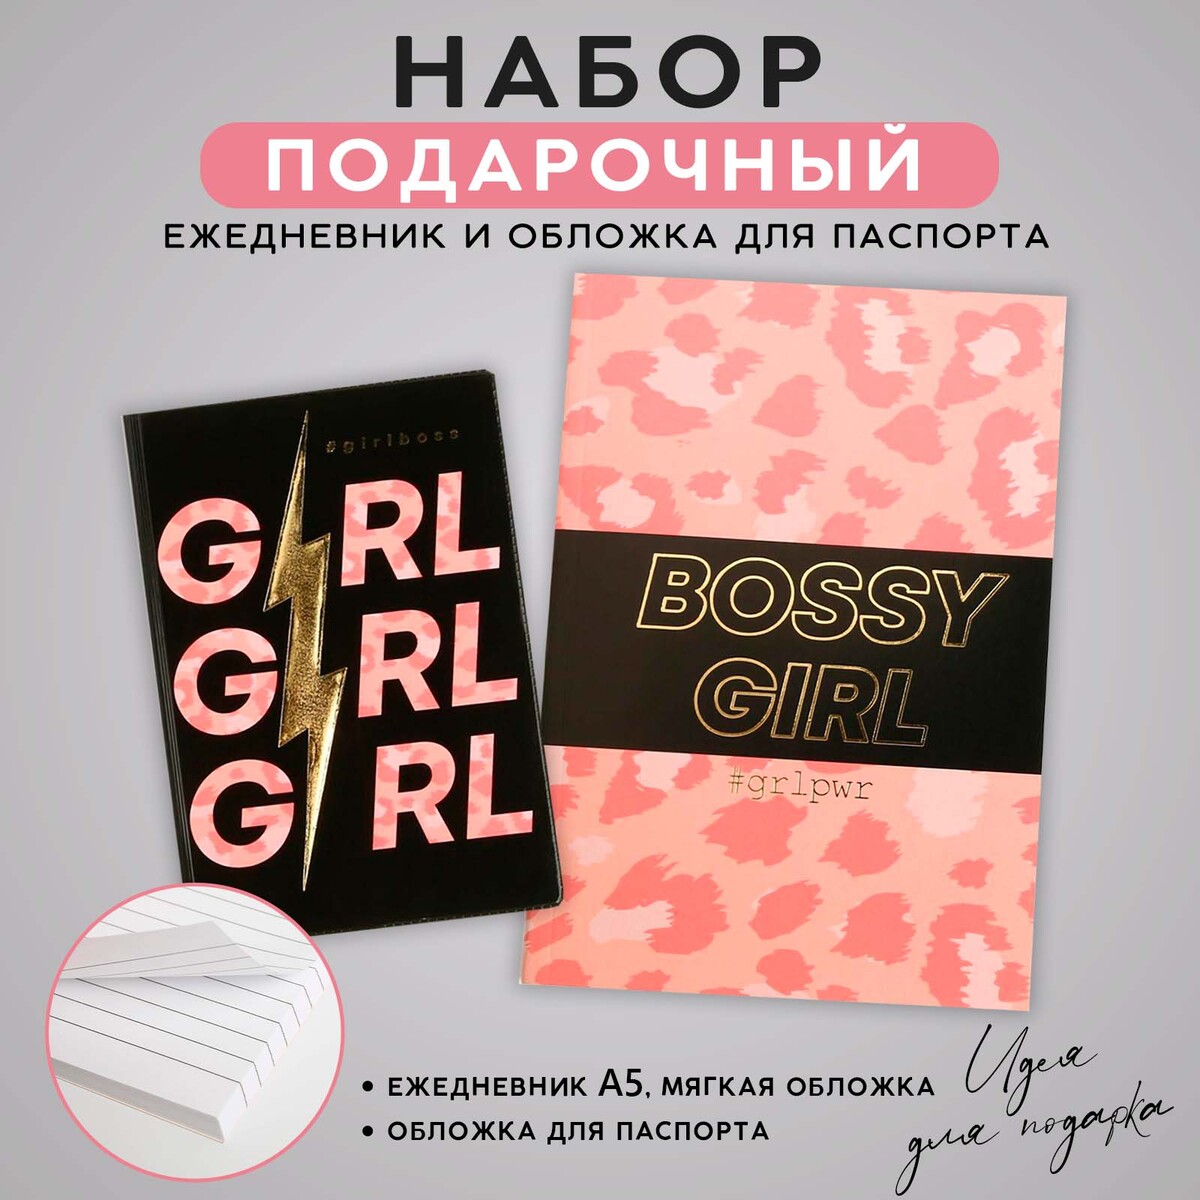 Набор обложка для паспорта и ежедневник #girl записная книжка а5 100 листов в клетку girl power твёрдая обложка ламинация soft touch